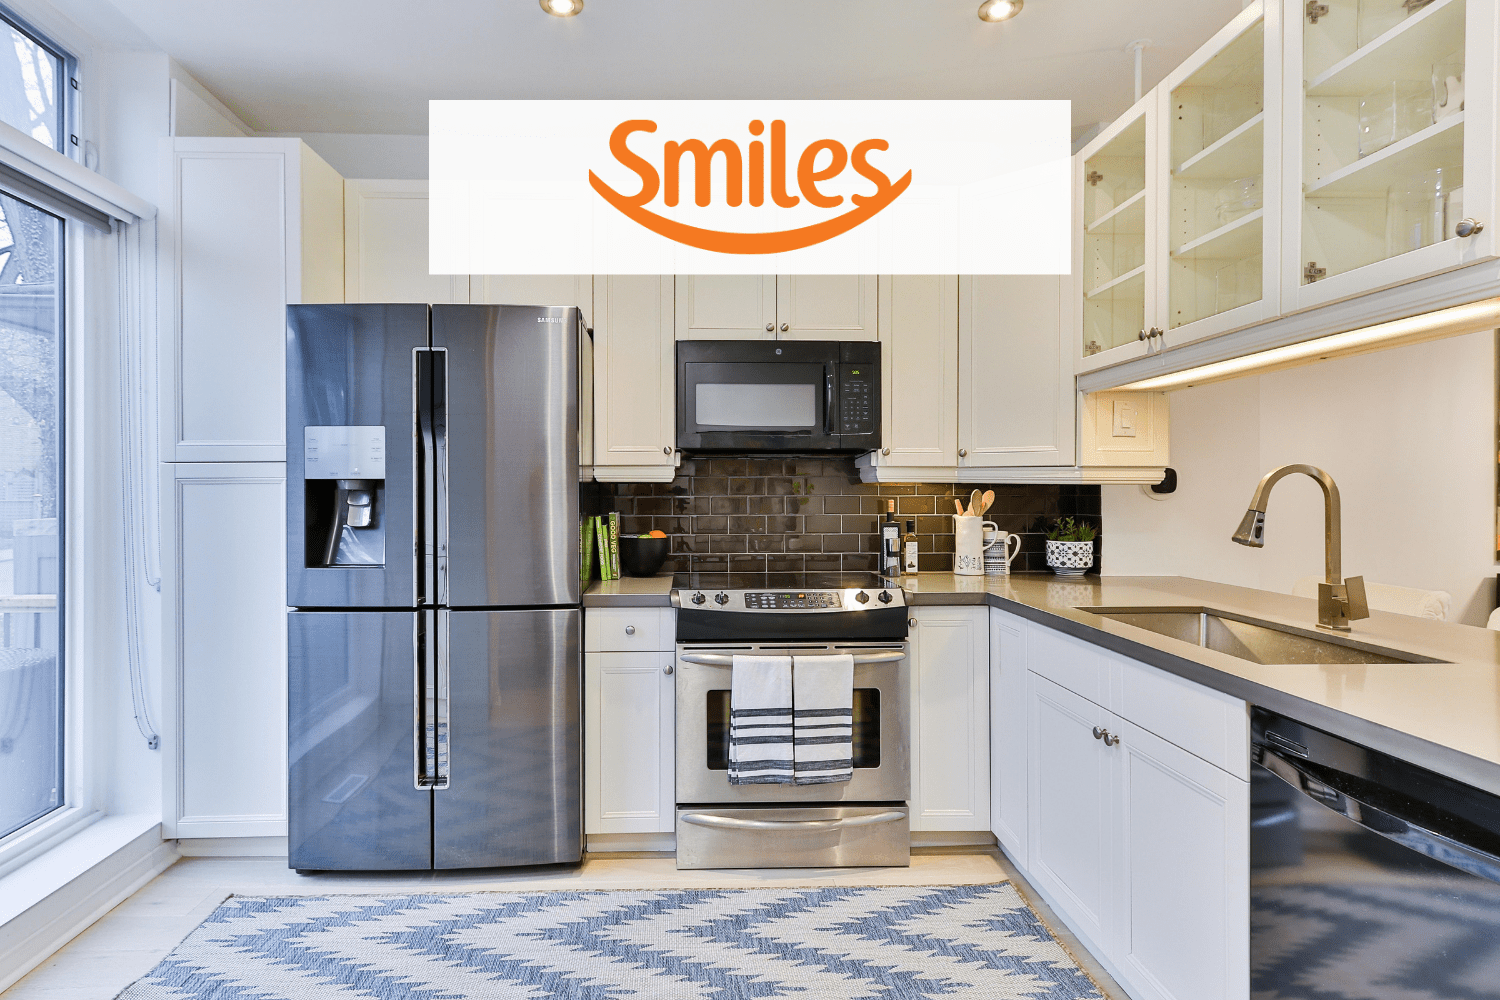 Cozinha com eletrodomésticos e logo Smiles